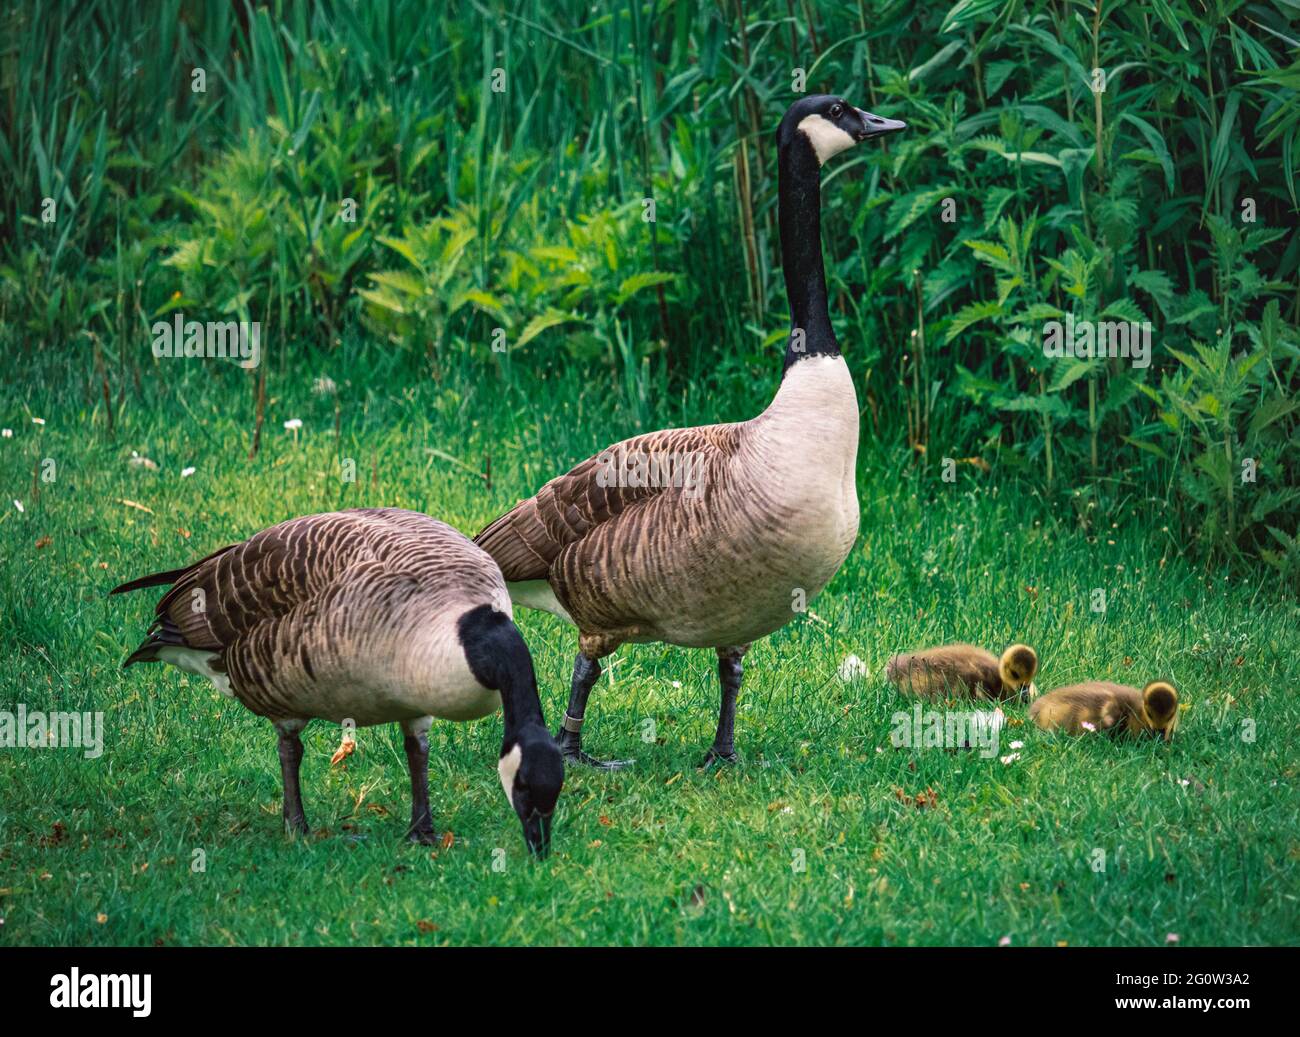 Wildgänse und Enten und eine Tierfamilie im Park im Frühling auf einer saftigen Wiese mit Gänseblümchen. Schloßpark in Essen Borbeck im Ruhrpott Stock Photo